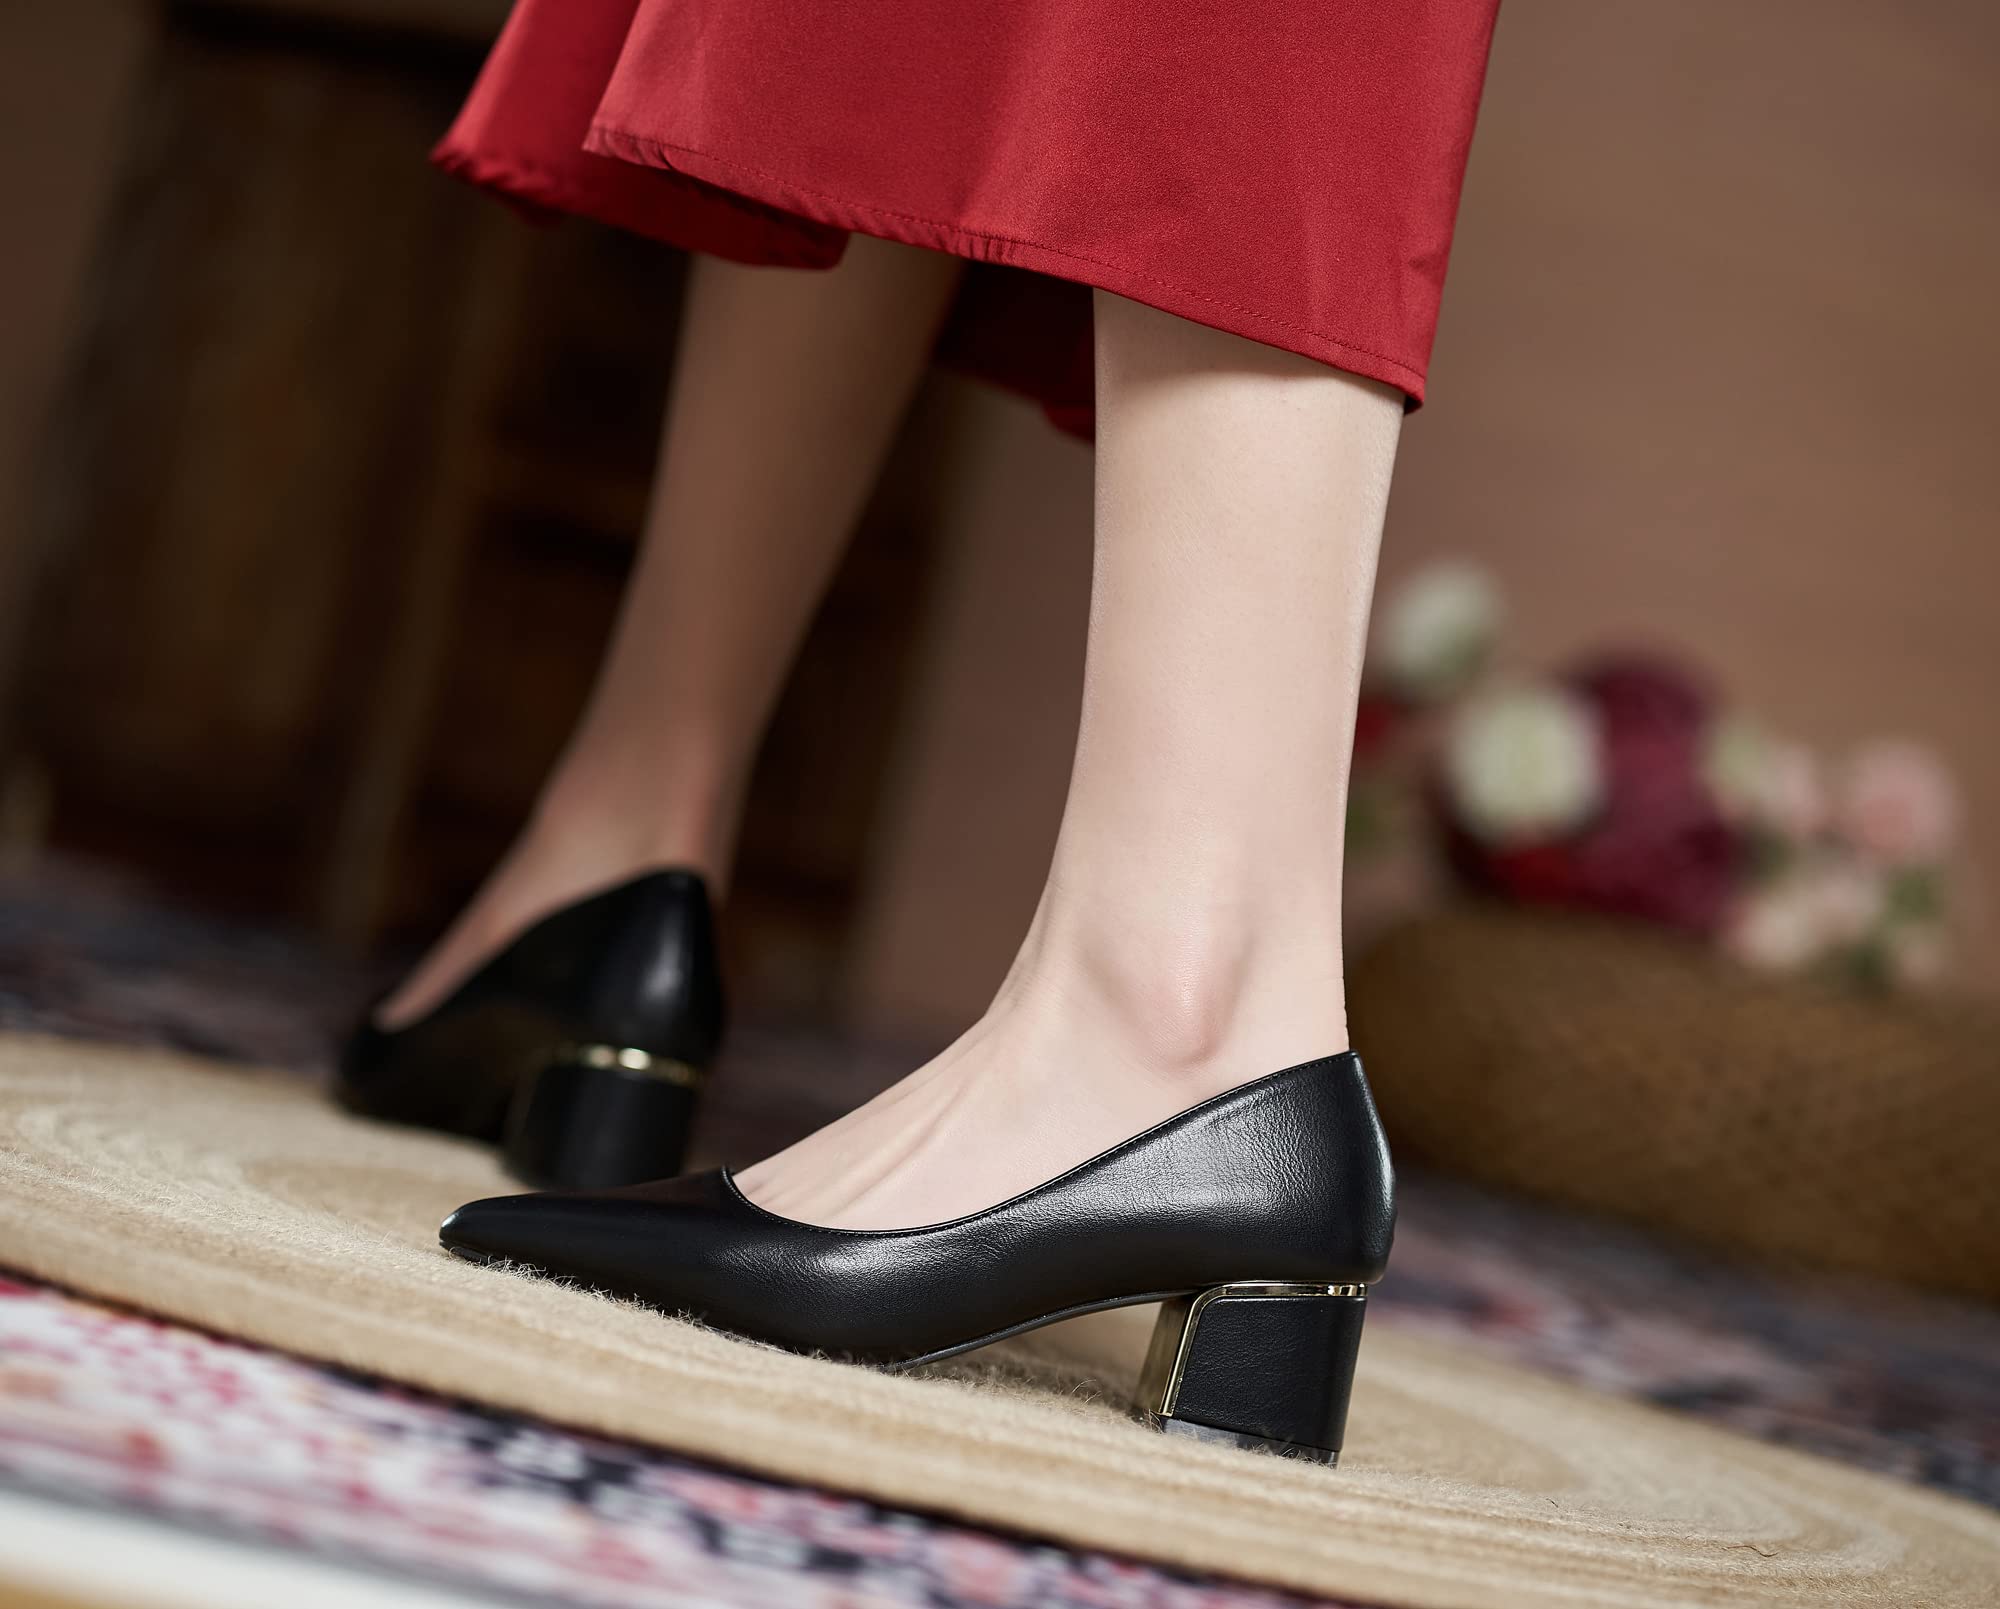 LizFoYa Women Leather Pump Shoe Office Daily Wear Work Pump Block Heel Pointed Toe Polished Mid Heels BlackW 3